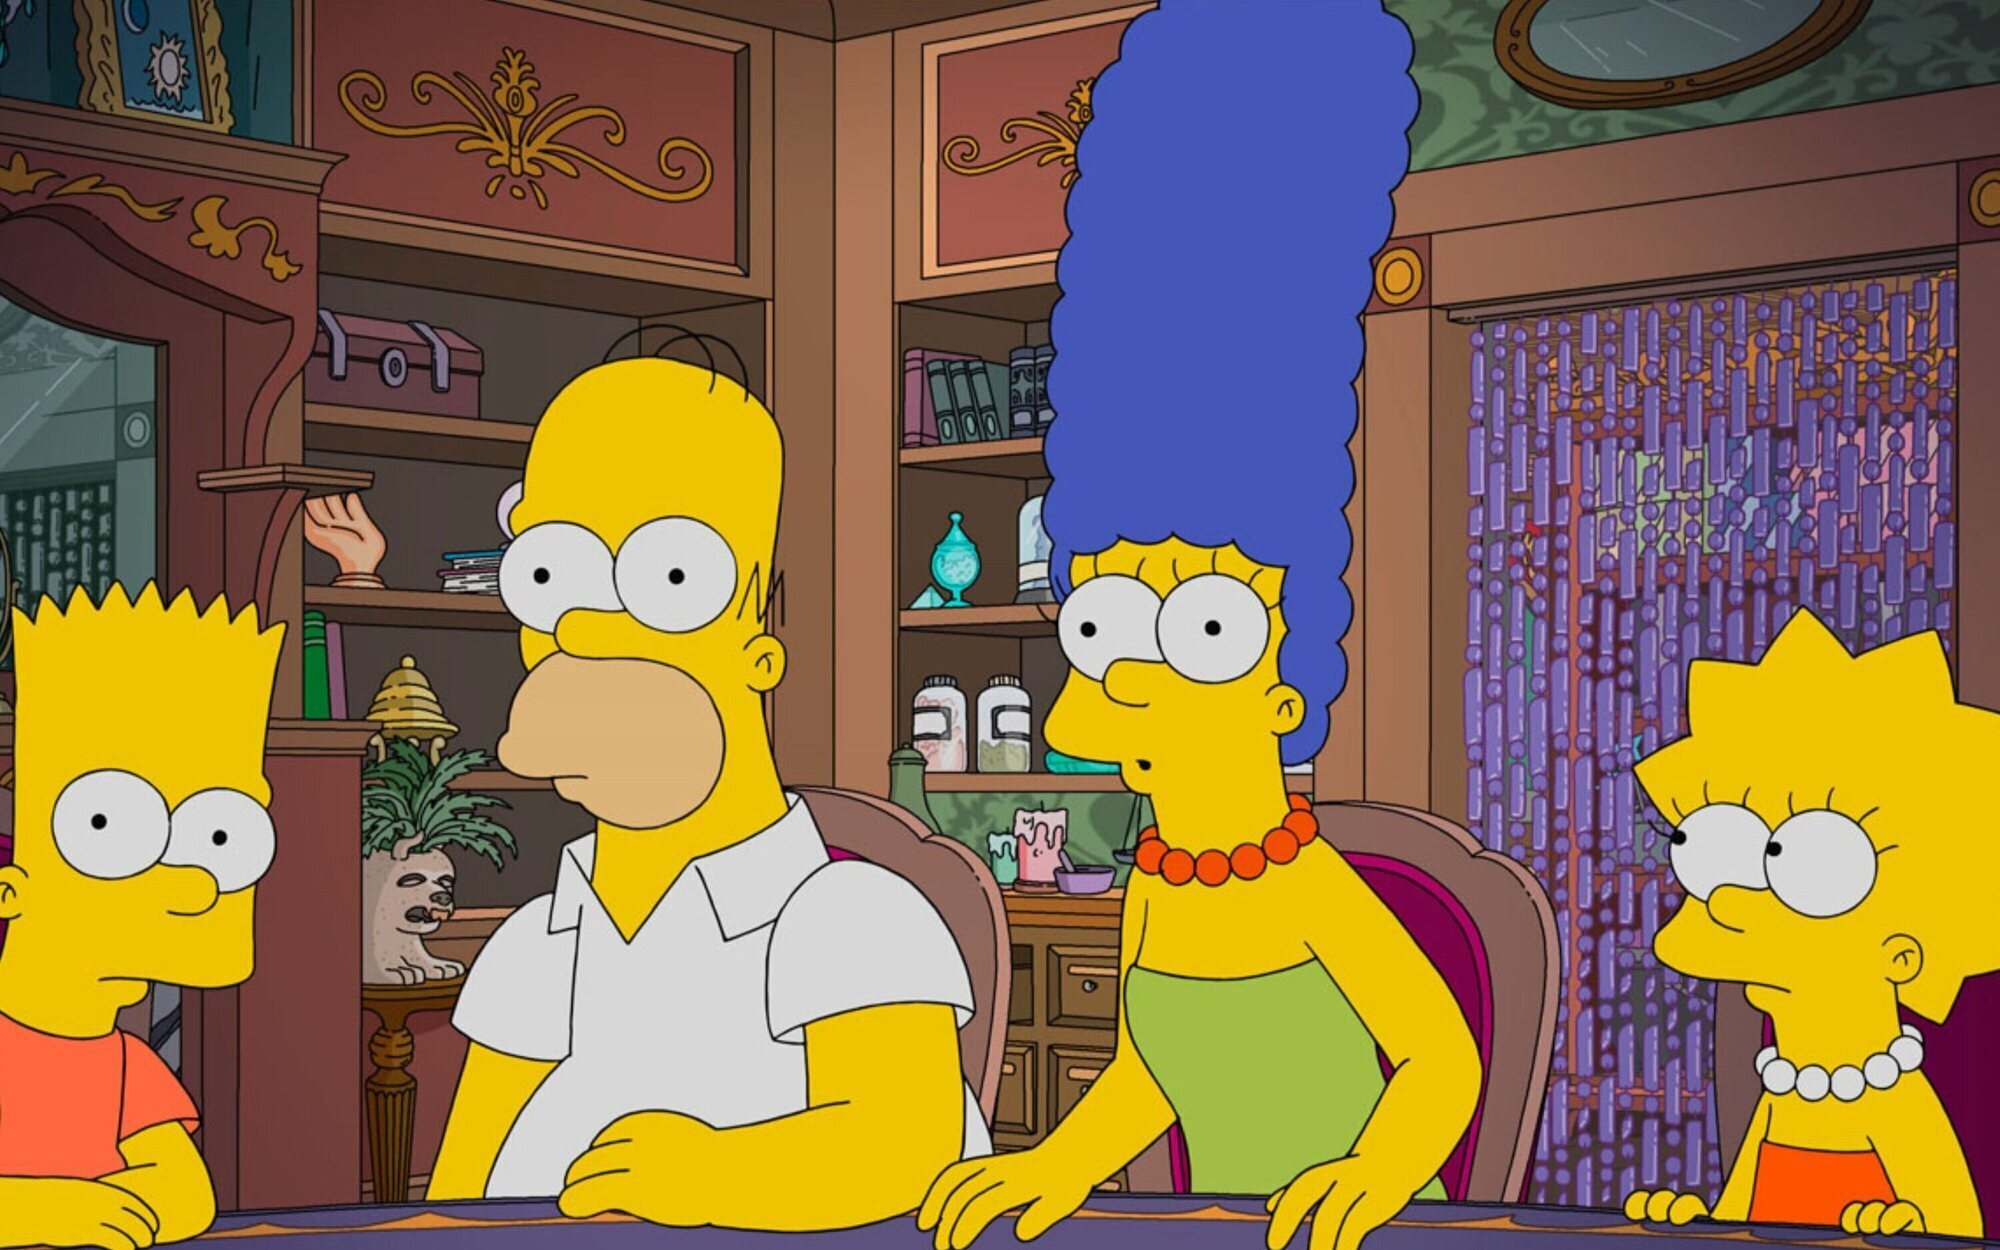 'Los Simpson' en Neox se acercan a 'Fugitiva' en Nova, que es lo más visto